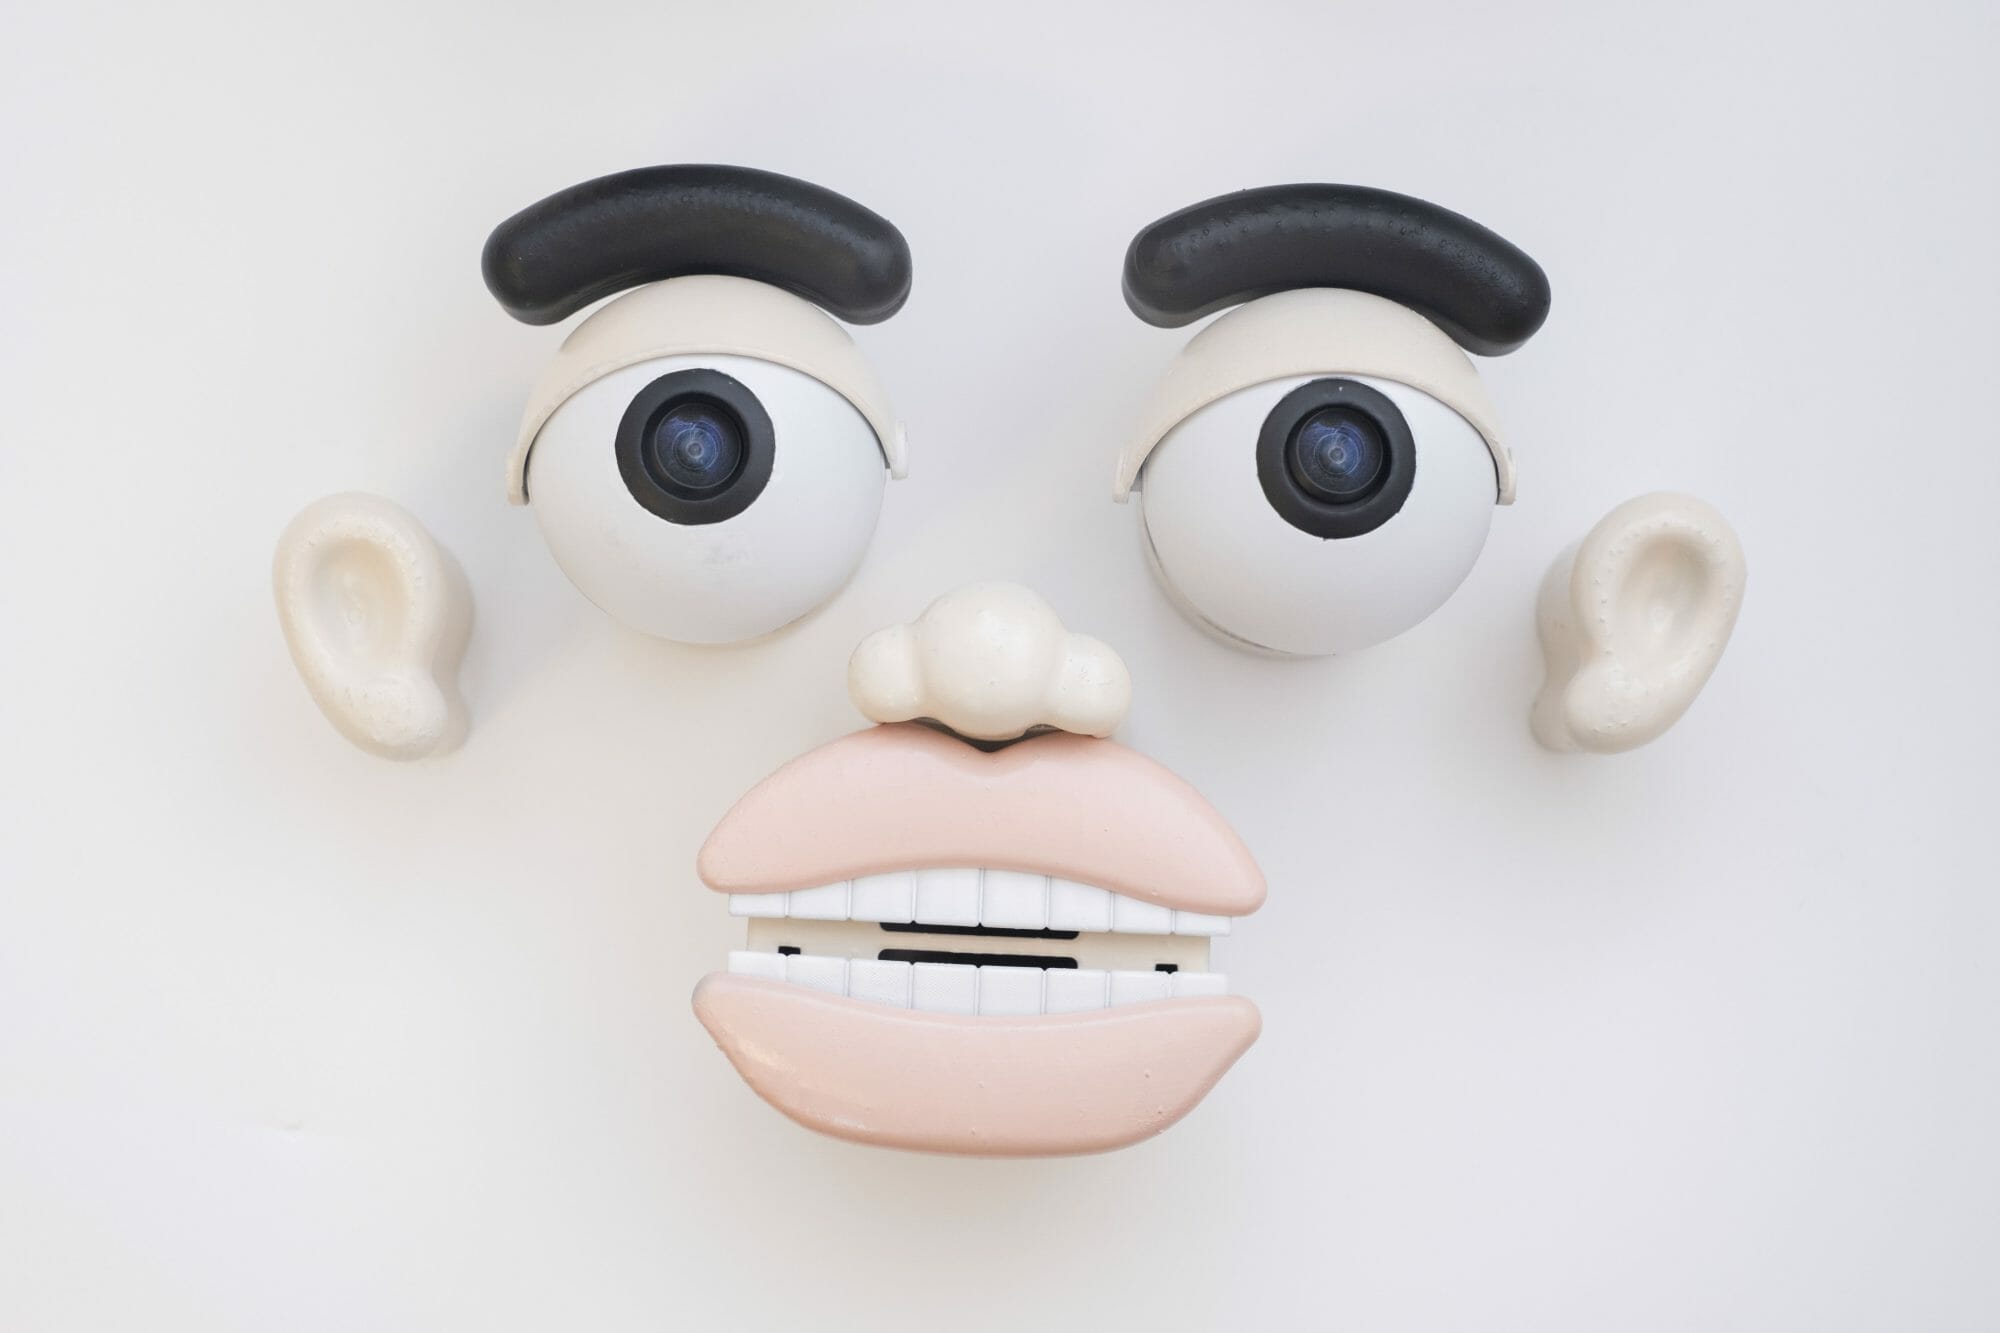 東京大学の稲見自在化身体プロジェクトらの「ジザイ・フェイス」─玩具のような「顔パーツ」で身体の拡張が可能